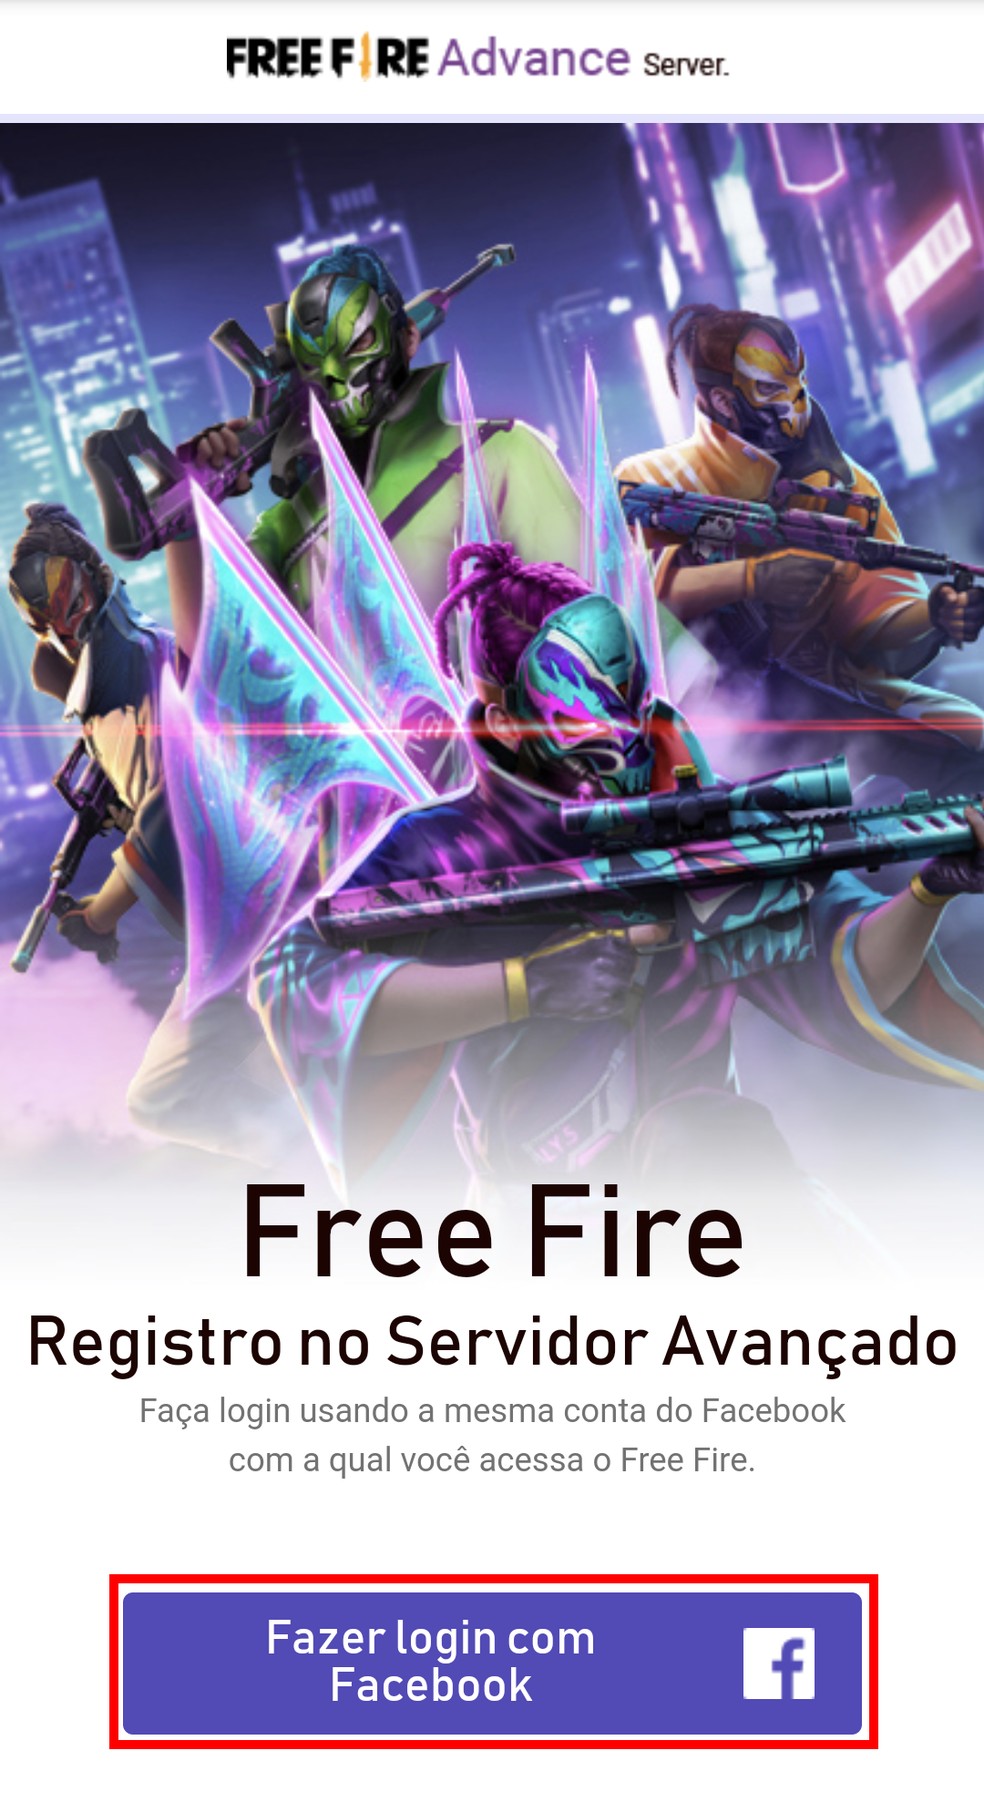 Servidor Avançado Free Fire: última semana do Advance Server FF